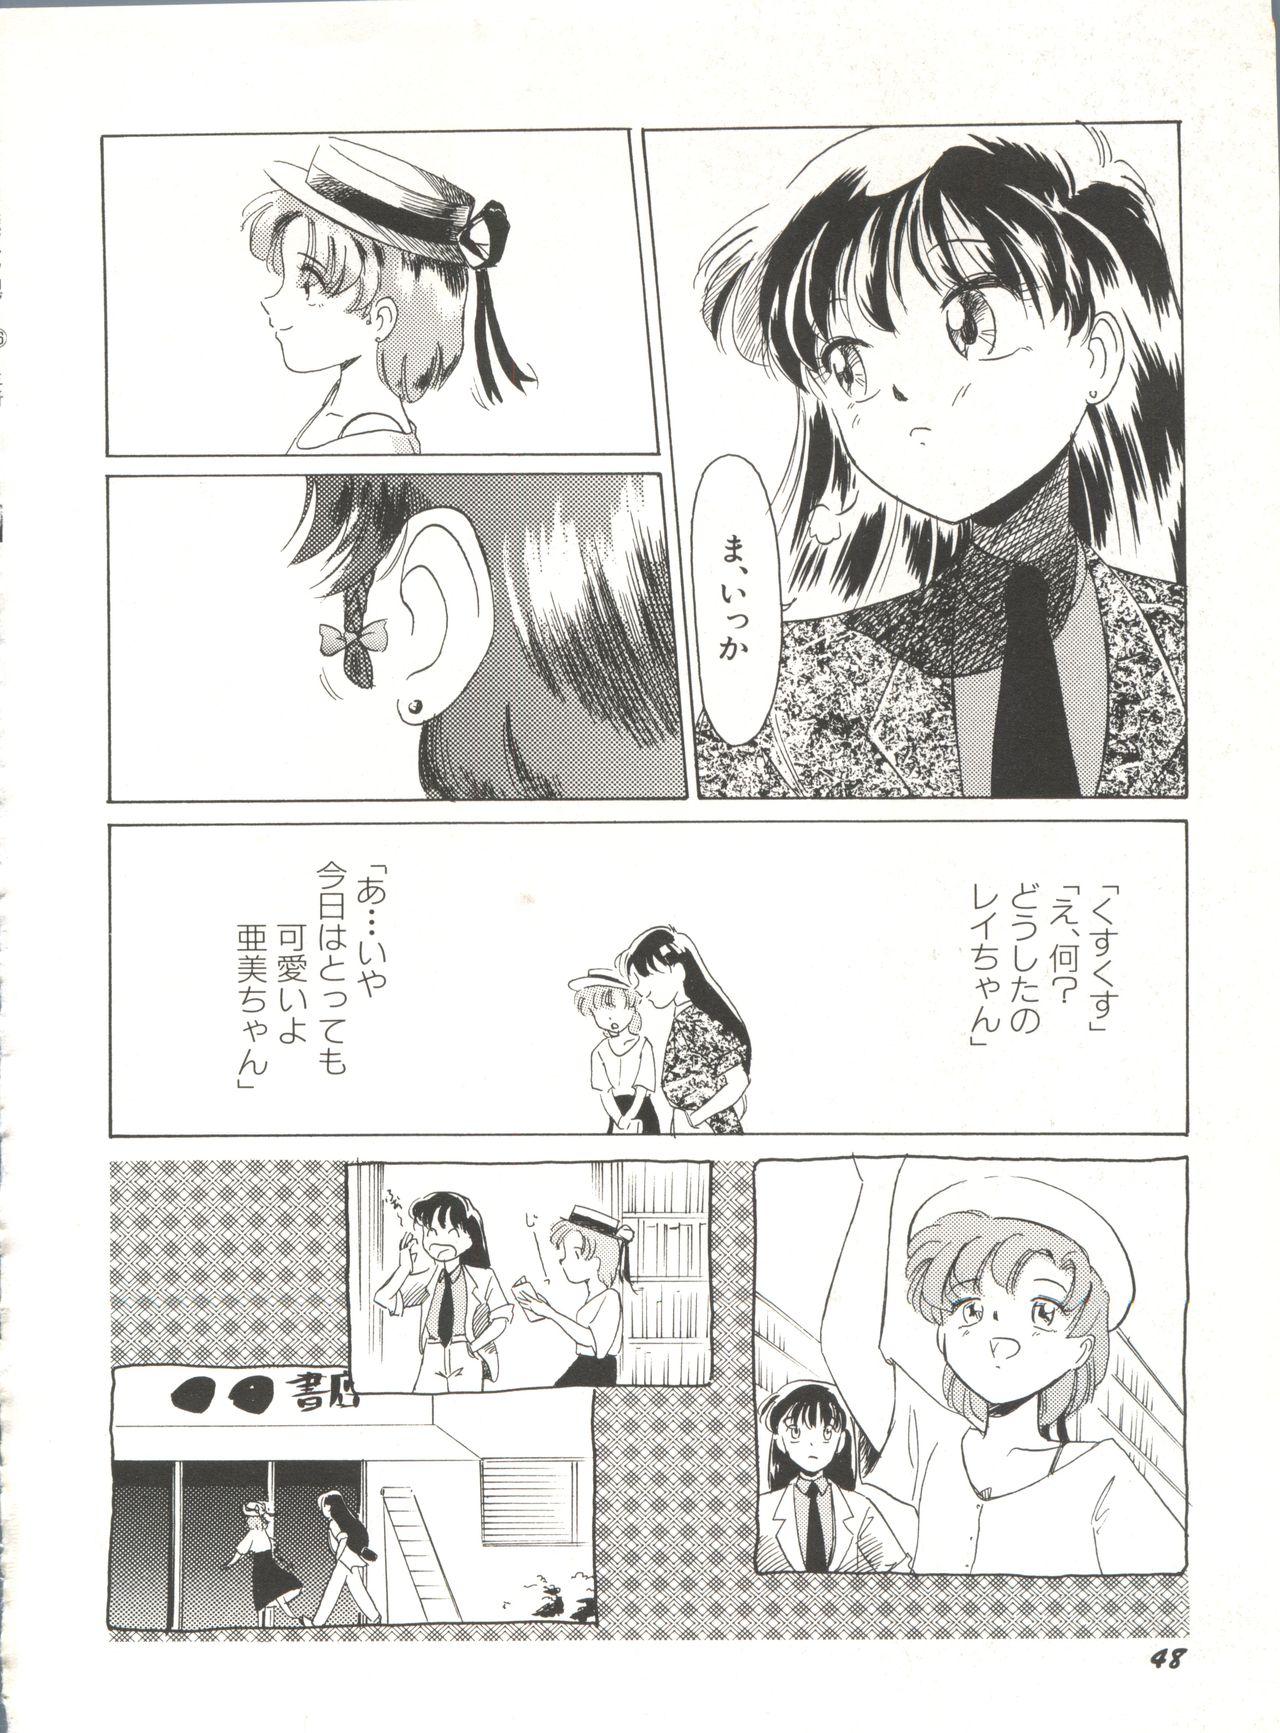 Bishoujo Doujinshi Anthology 16 - Moon Paradise 10 Tsuki no Rakuen 53